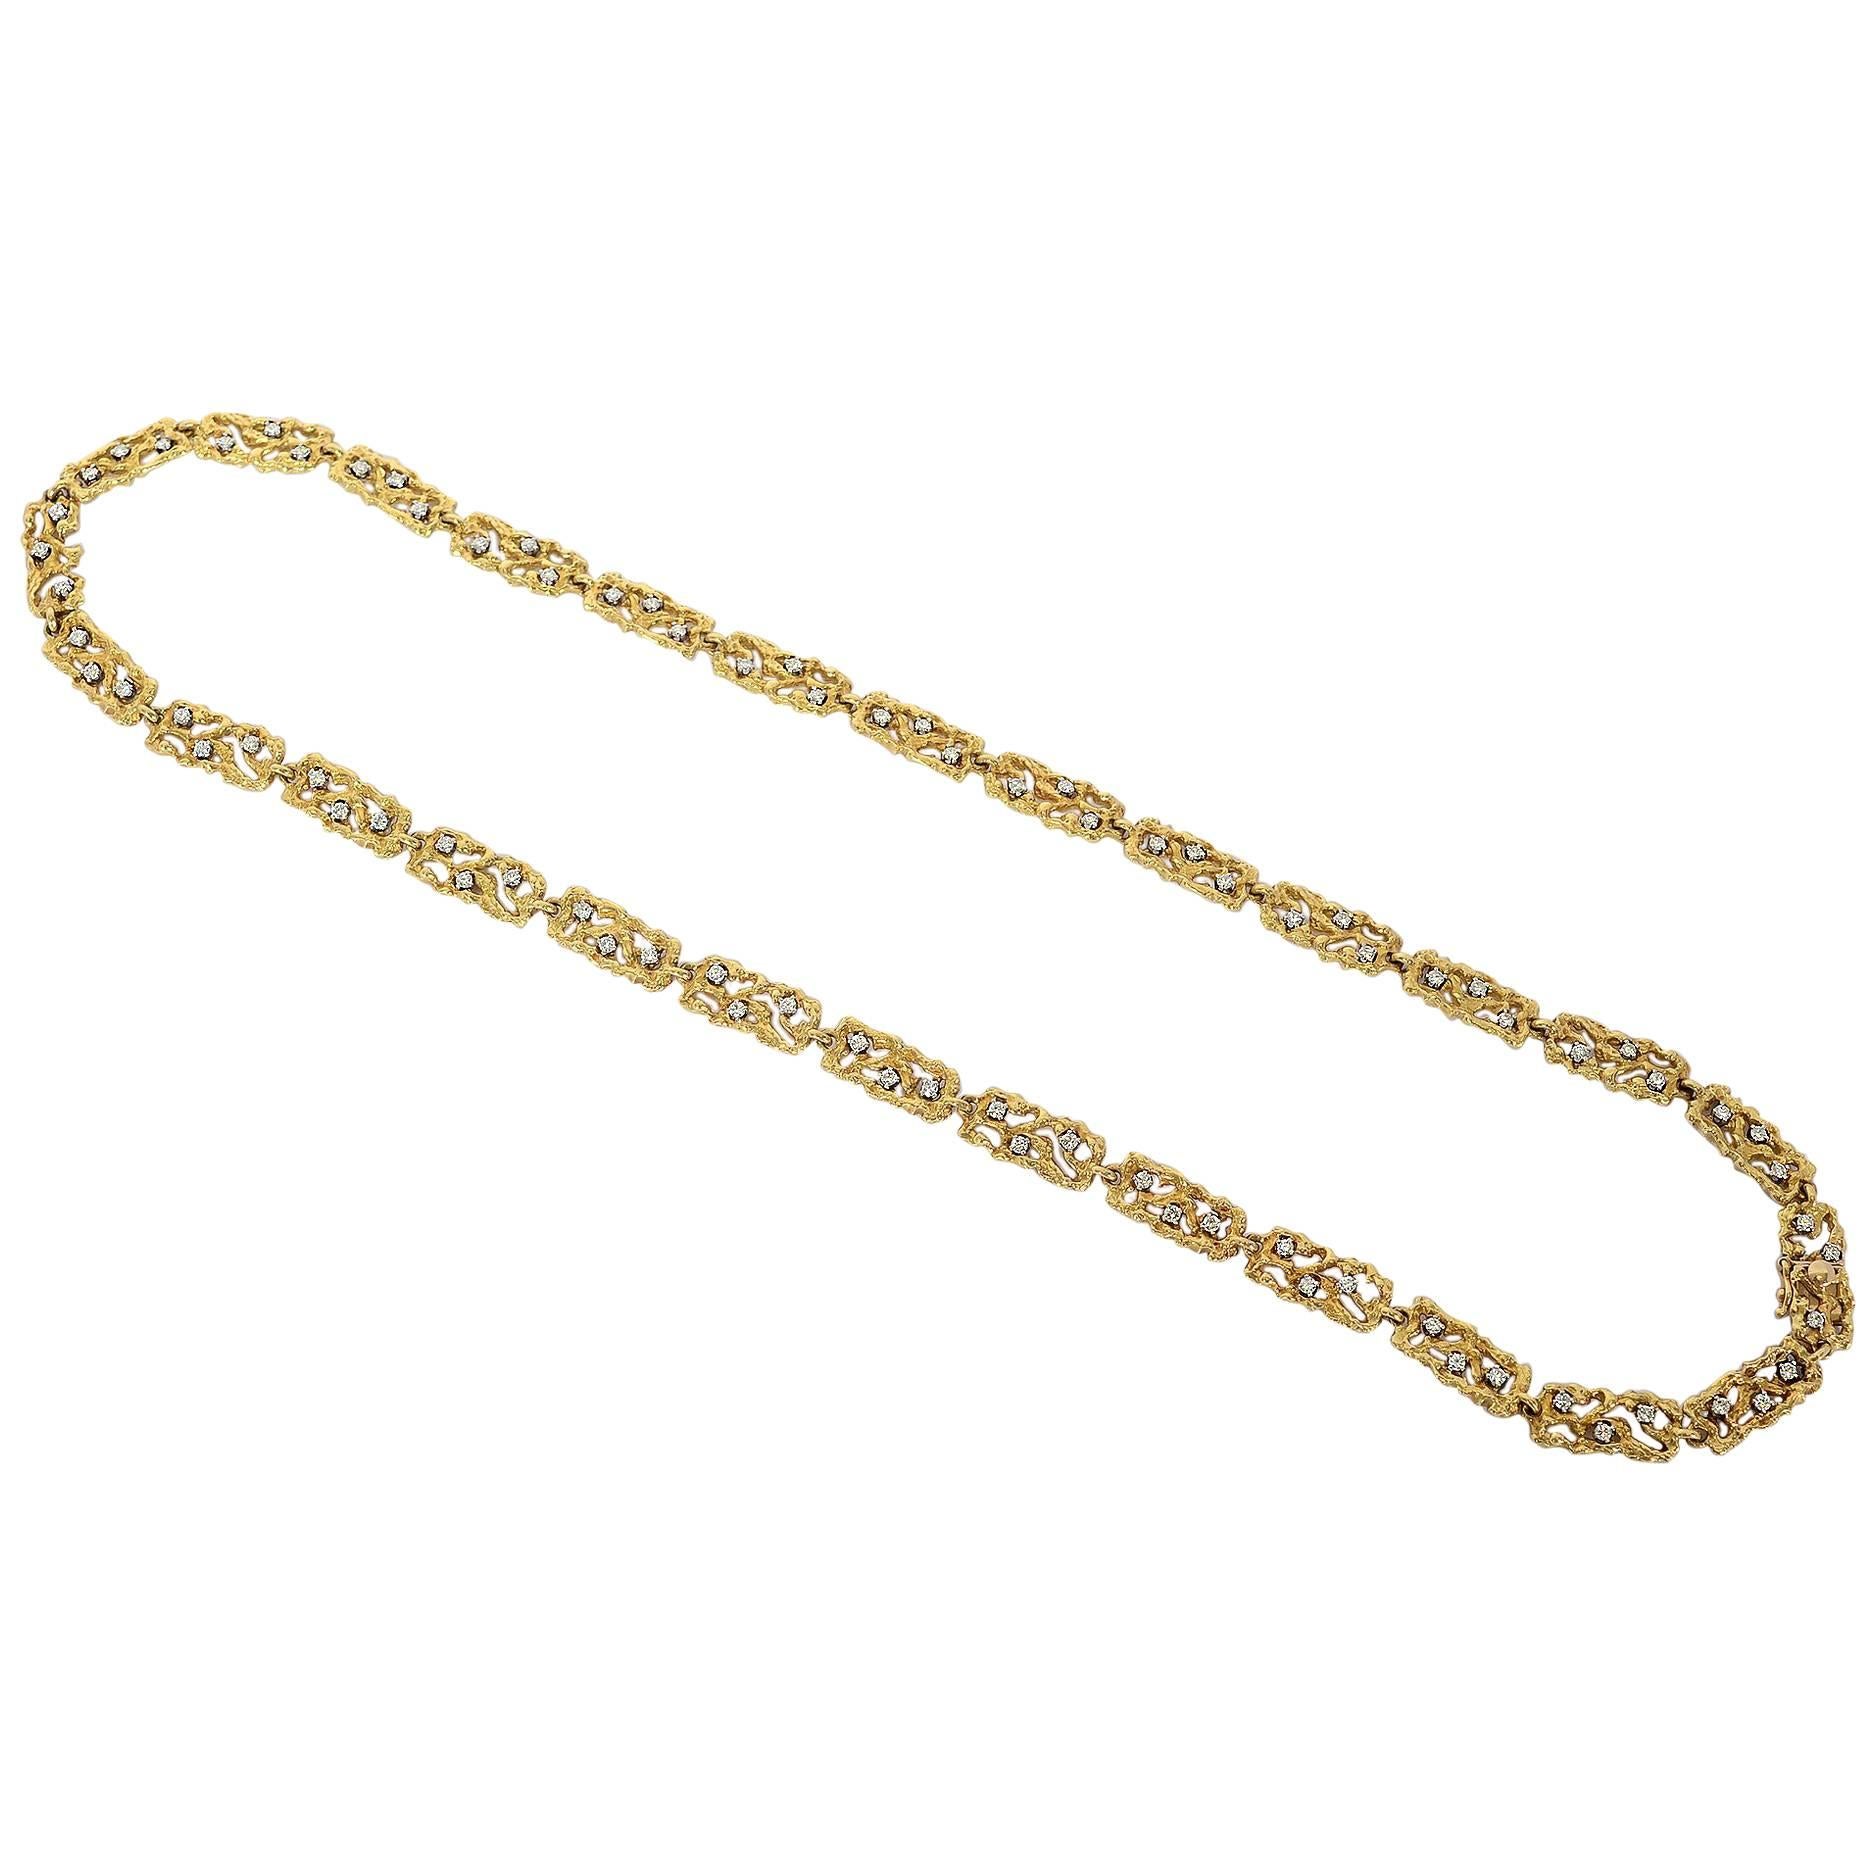 Boris Le Beau Gold Chain Necklace with Diamonds